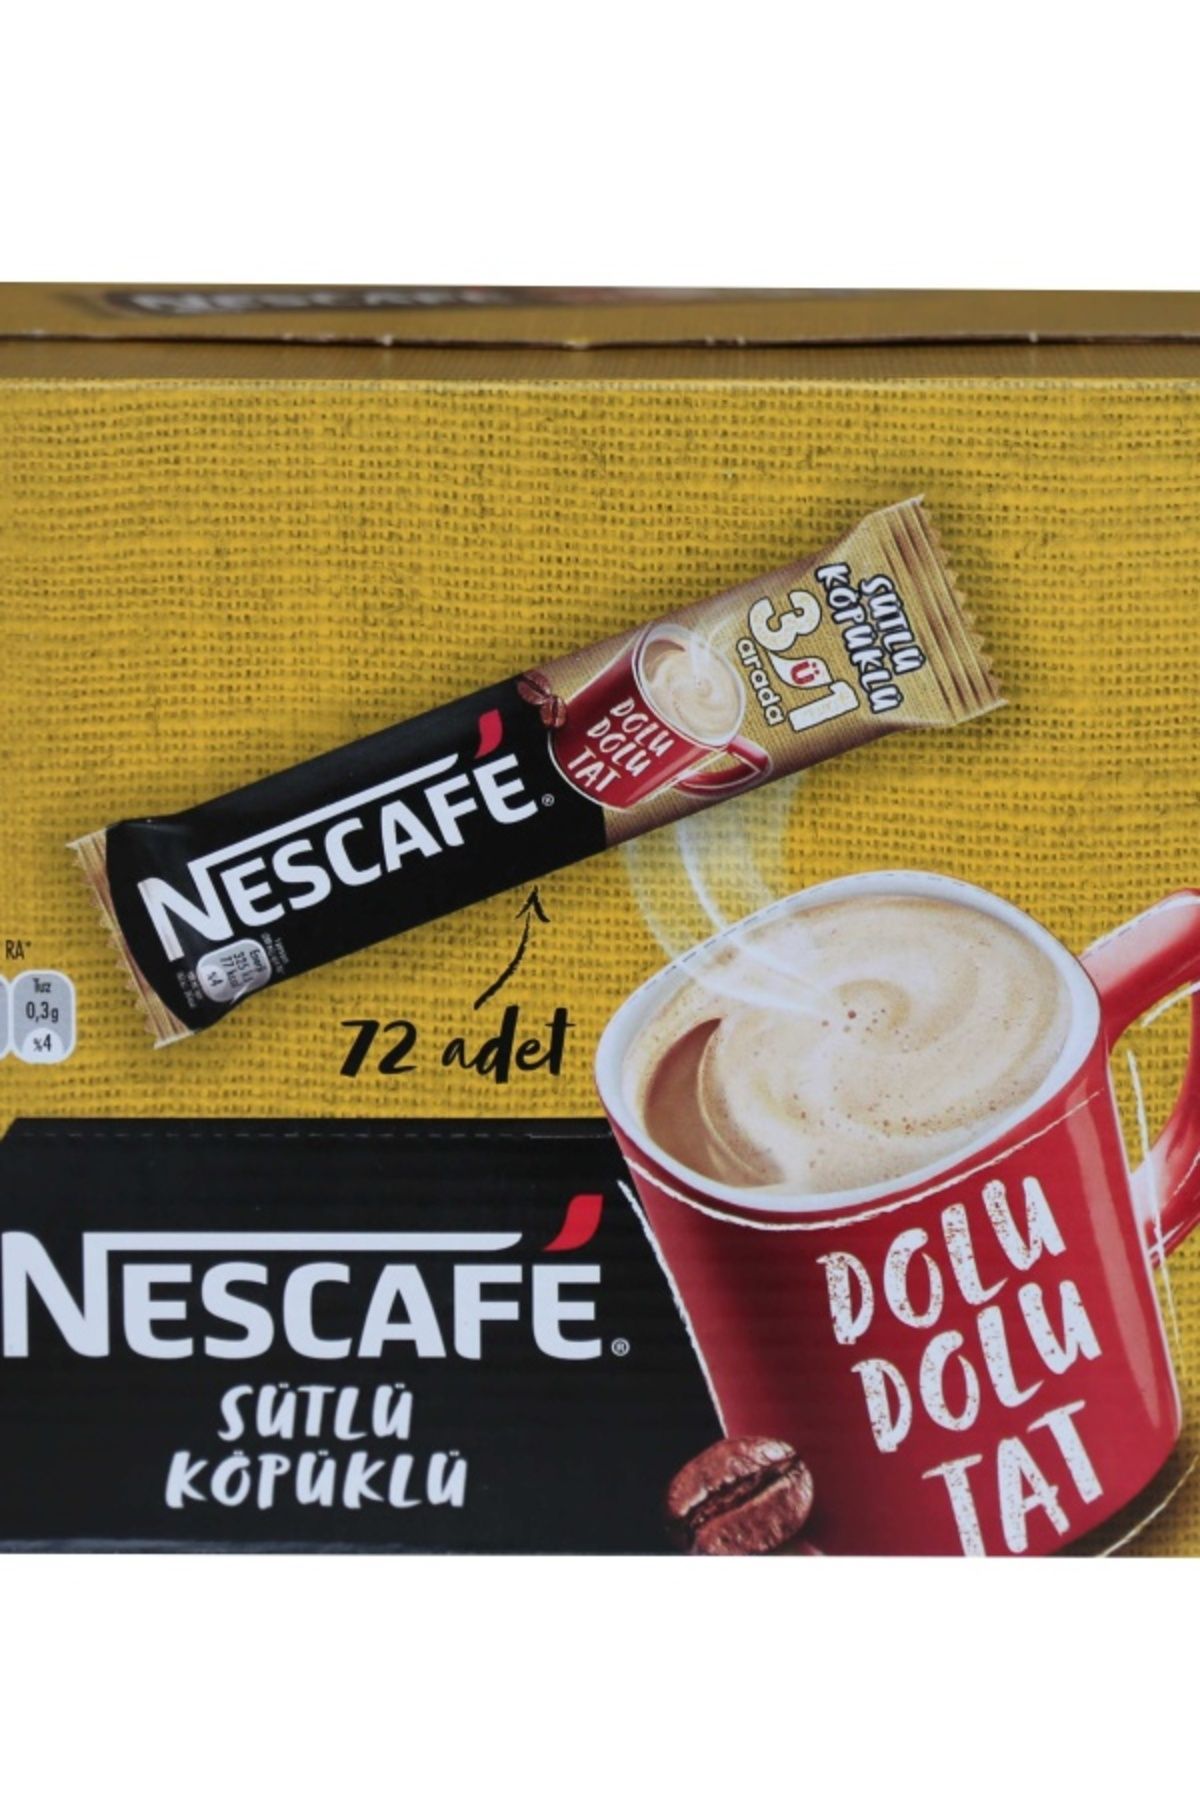 Nestle Nescafe 3ü1 Arada Sütlü Köpüklü 72 Adet 17,4gr 12516984